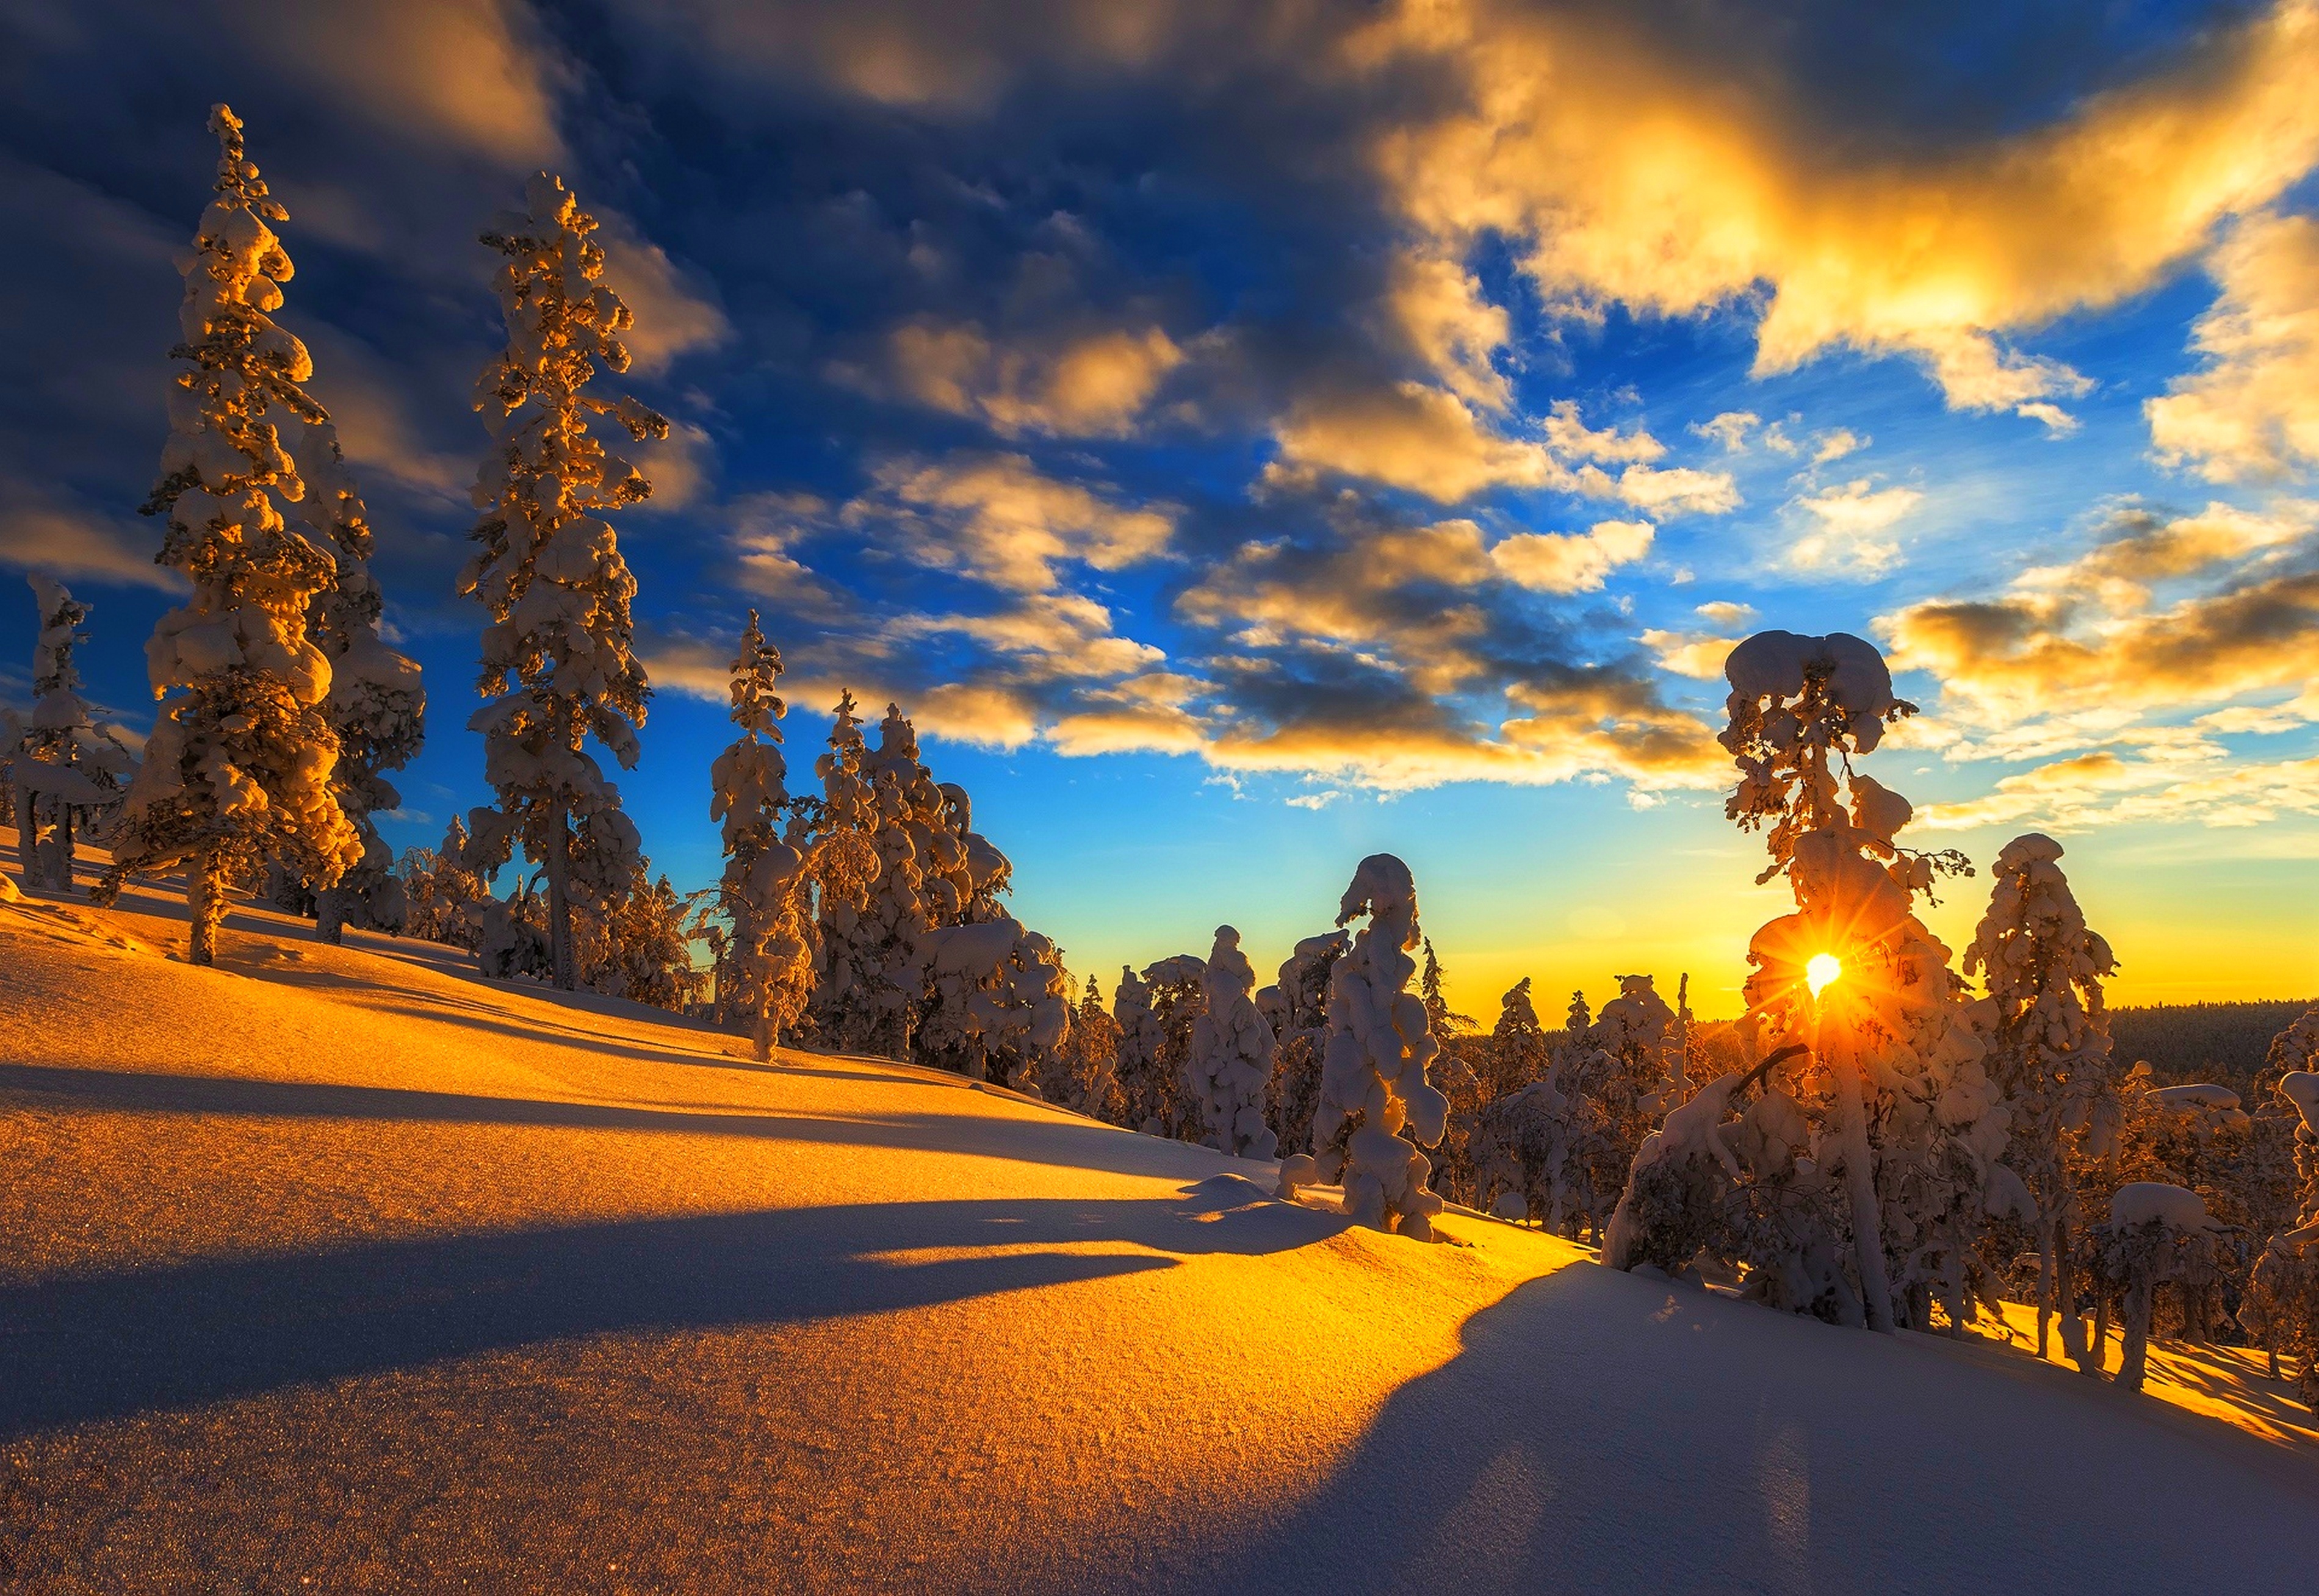 Скачать обои бесплатно Зима, Солнце, Снег, Дерево, Земля/природа картинка на рабочий стол ПК